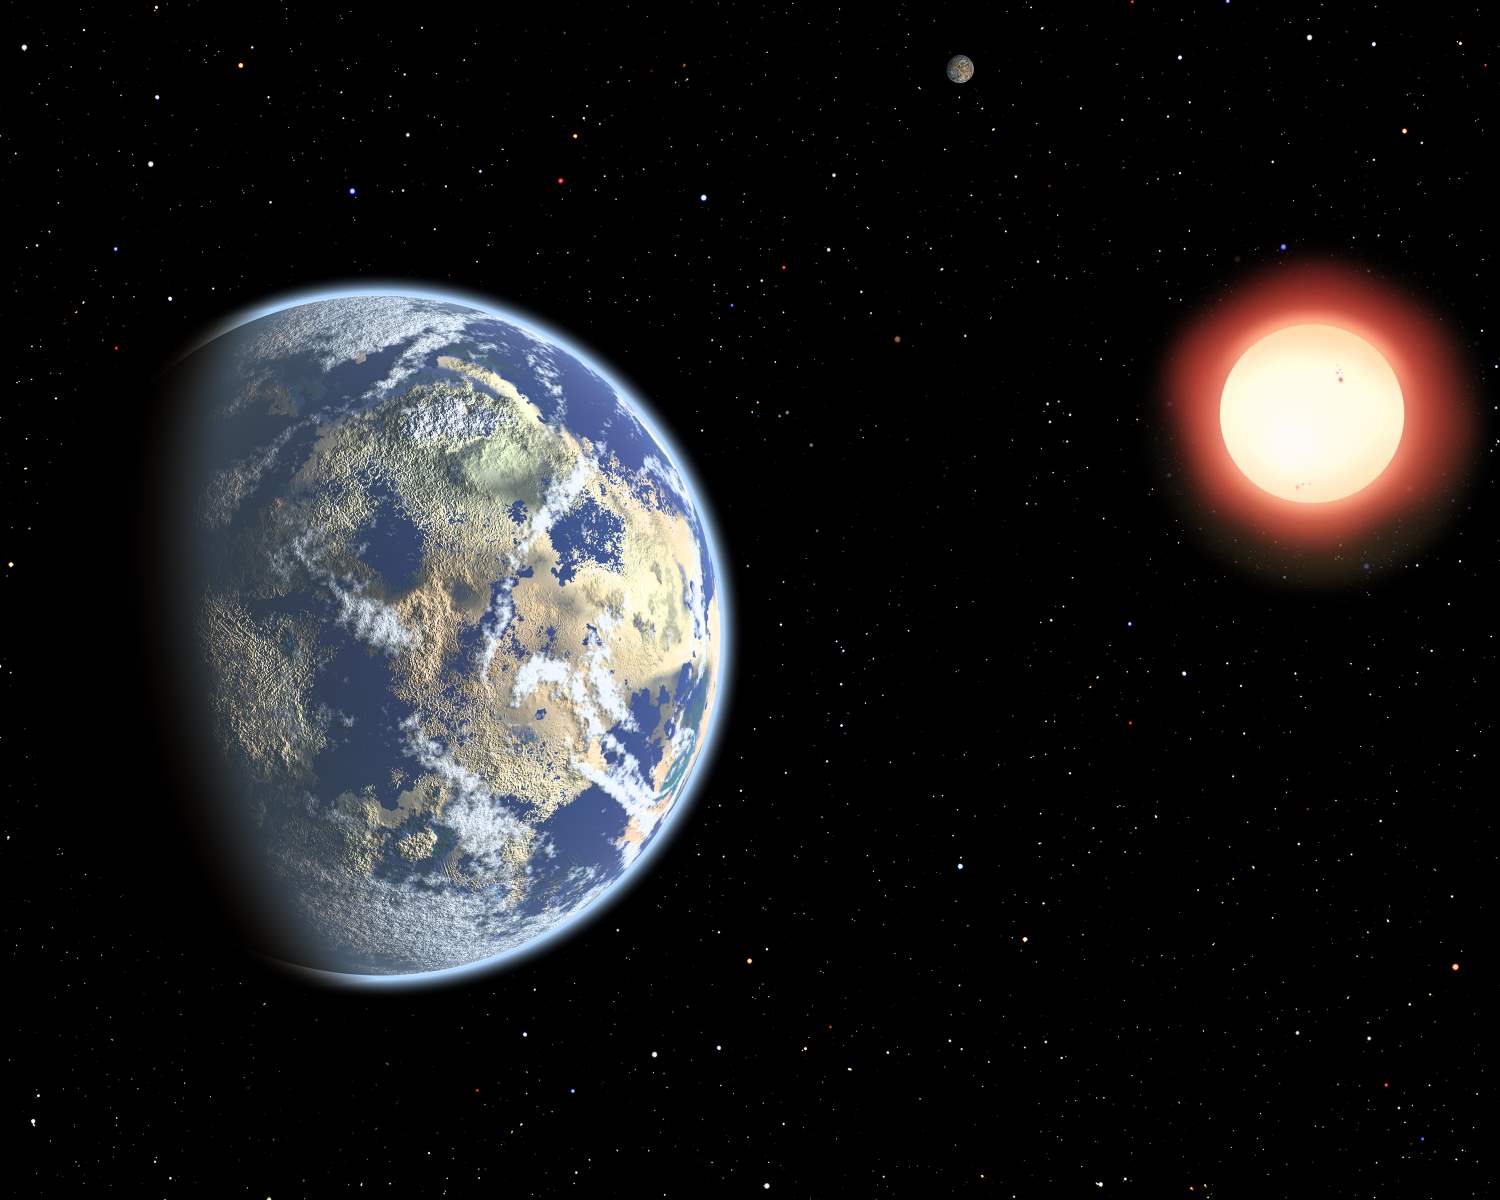 Dos exoplanetas habitables en la estrella de Teegarden